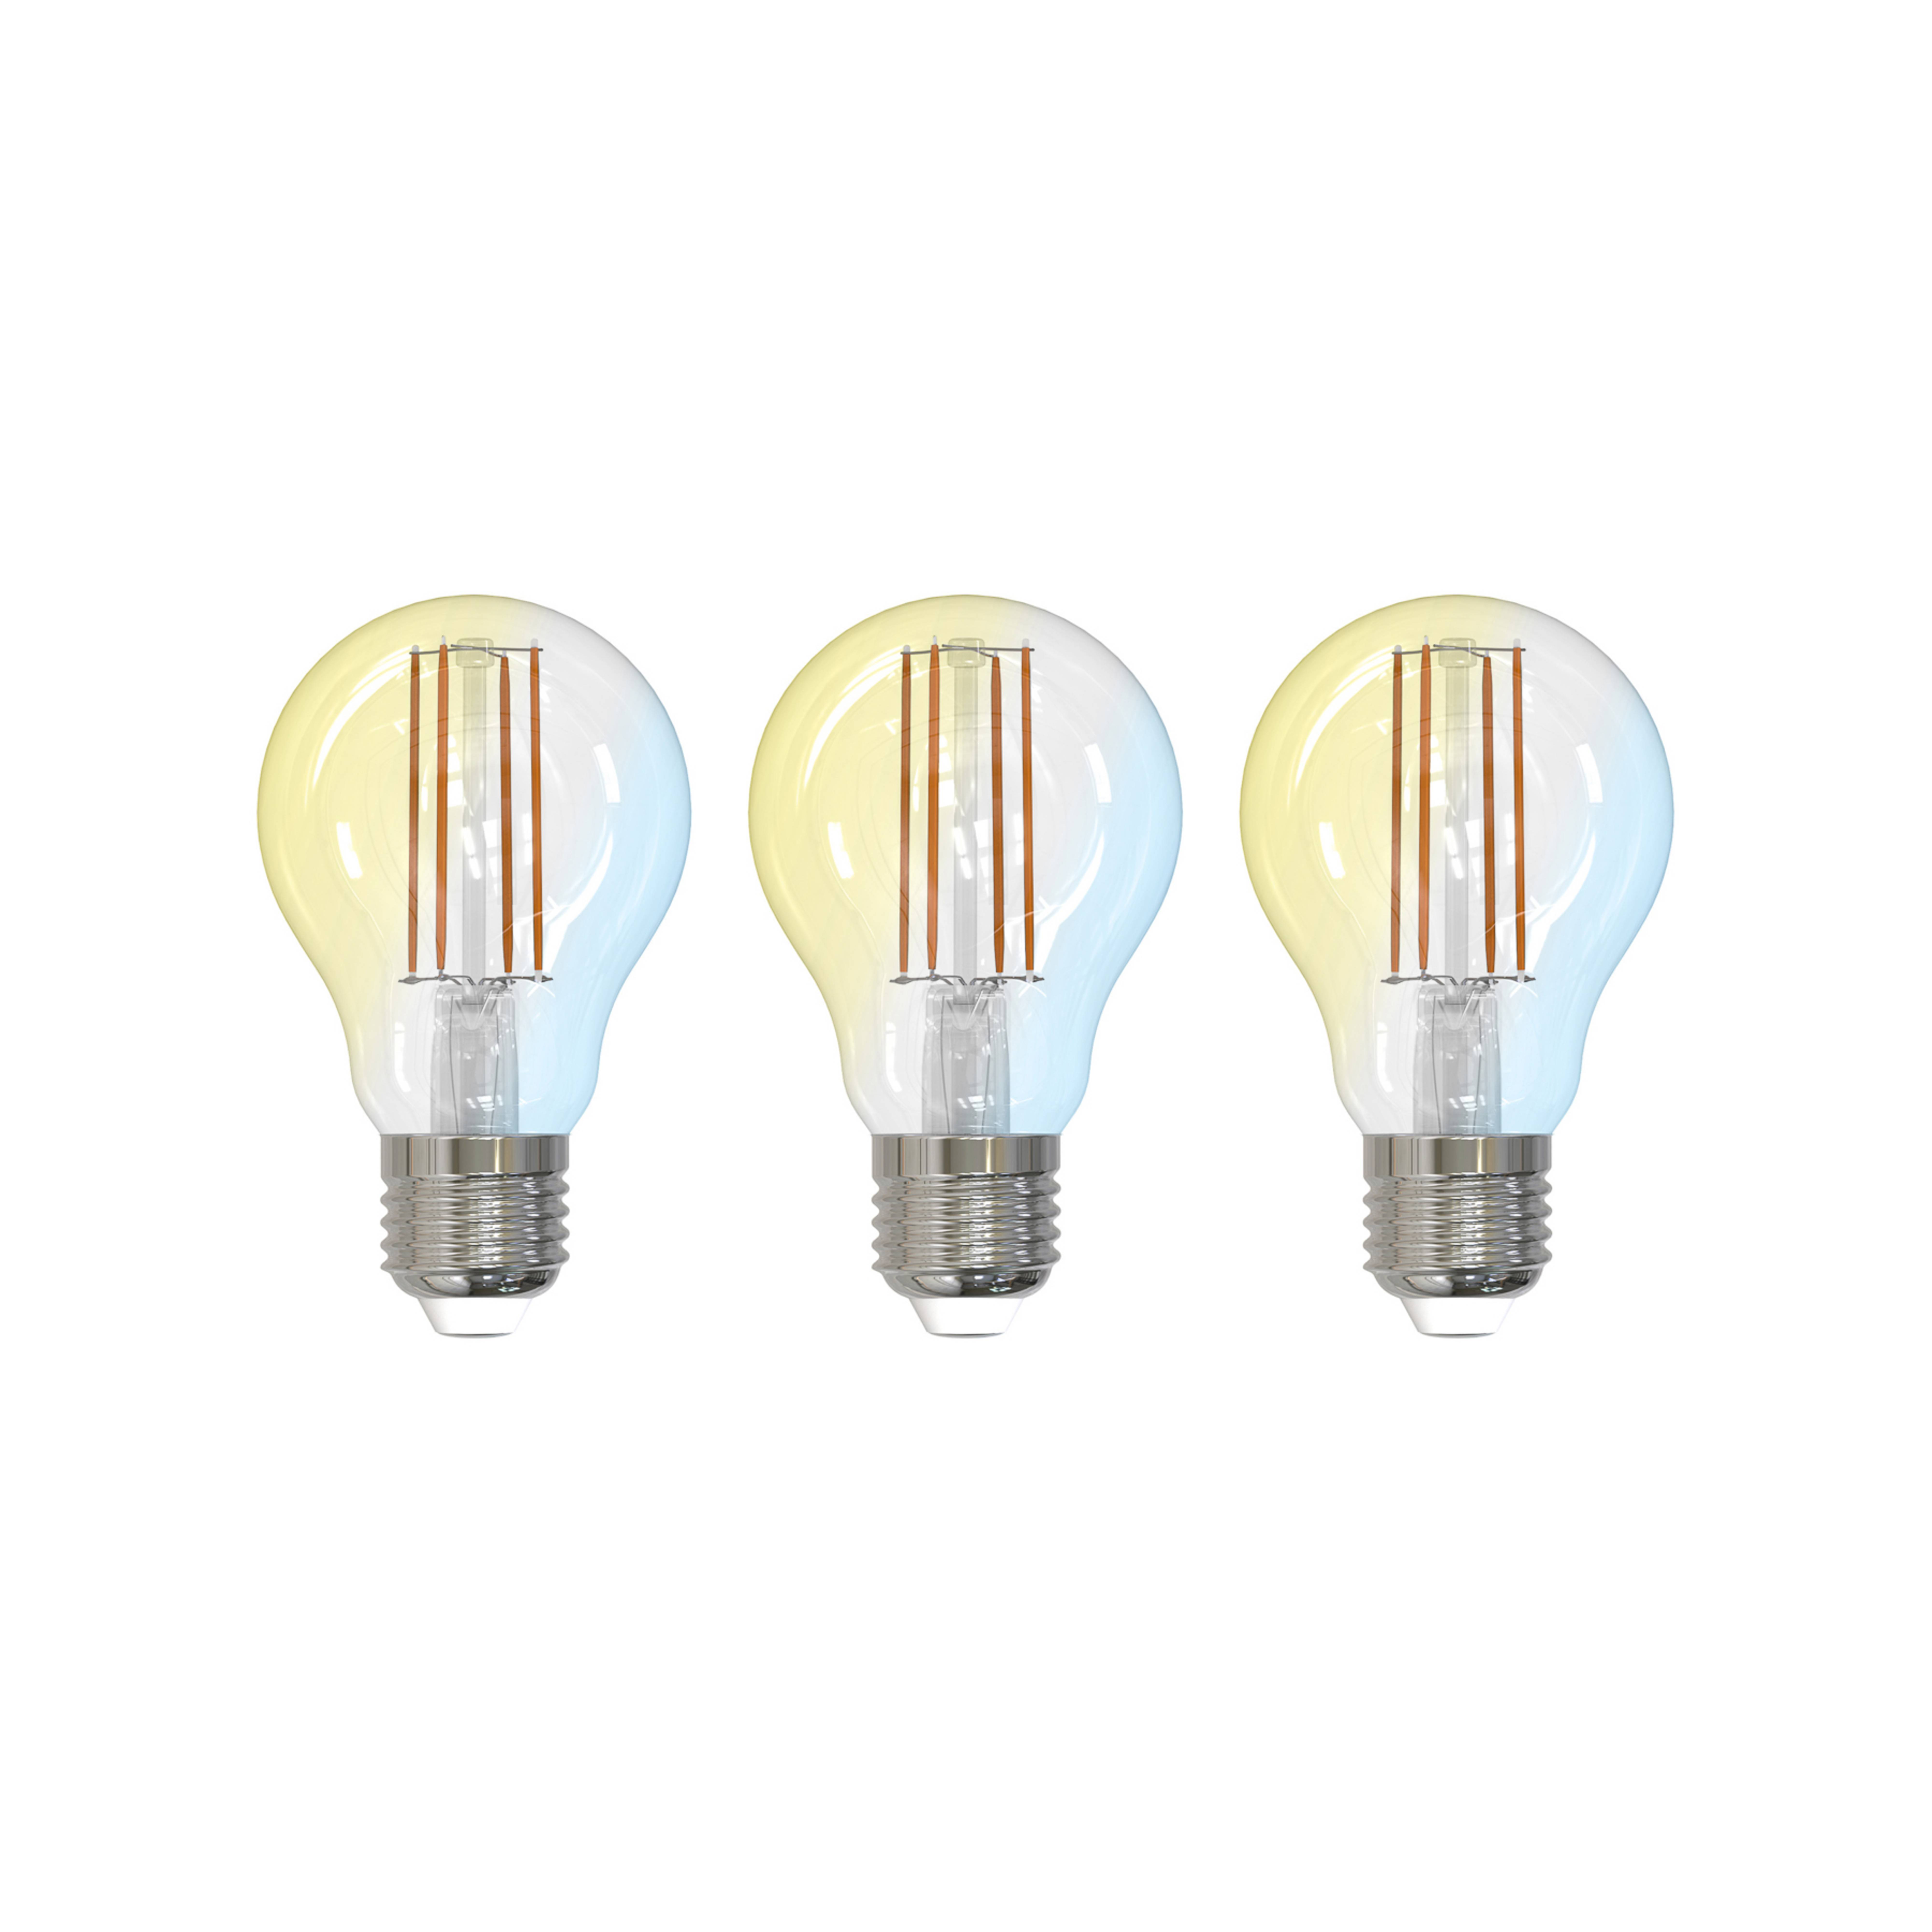 LUUMR Smart LED, E27, 7W, ZigBee, Tuya, Philips Hue, lote de 3